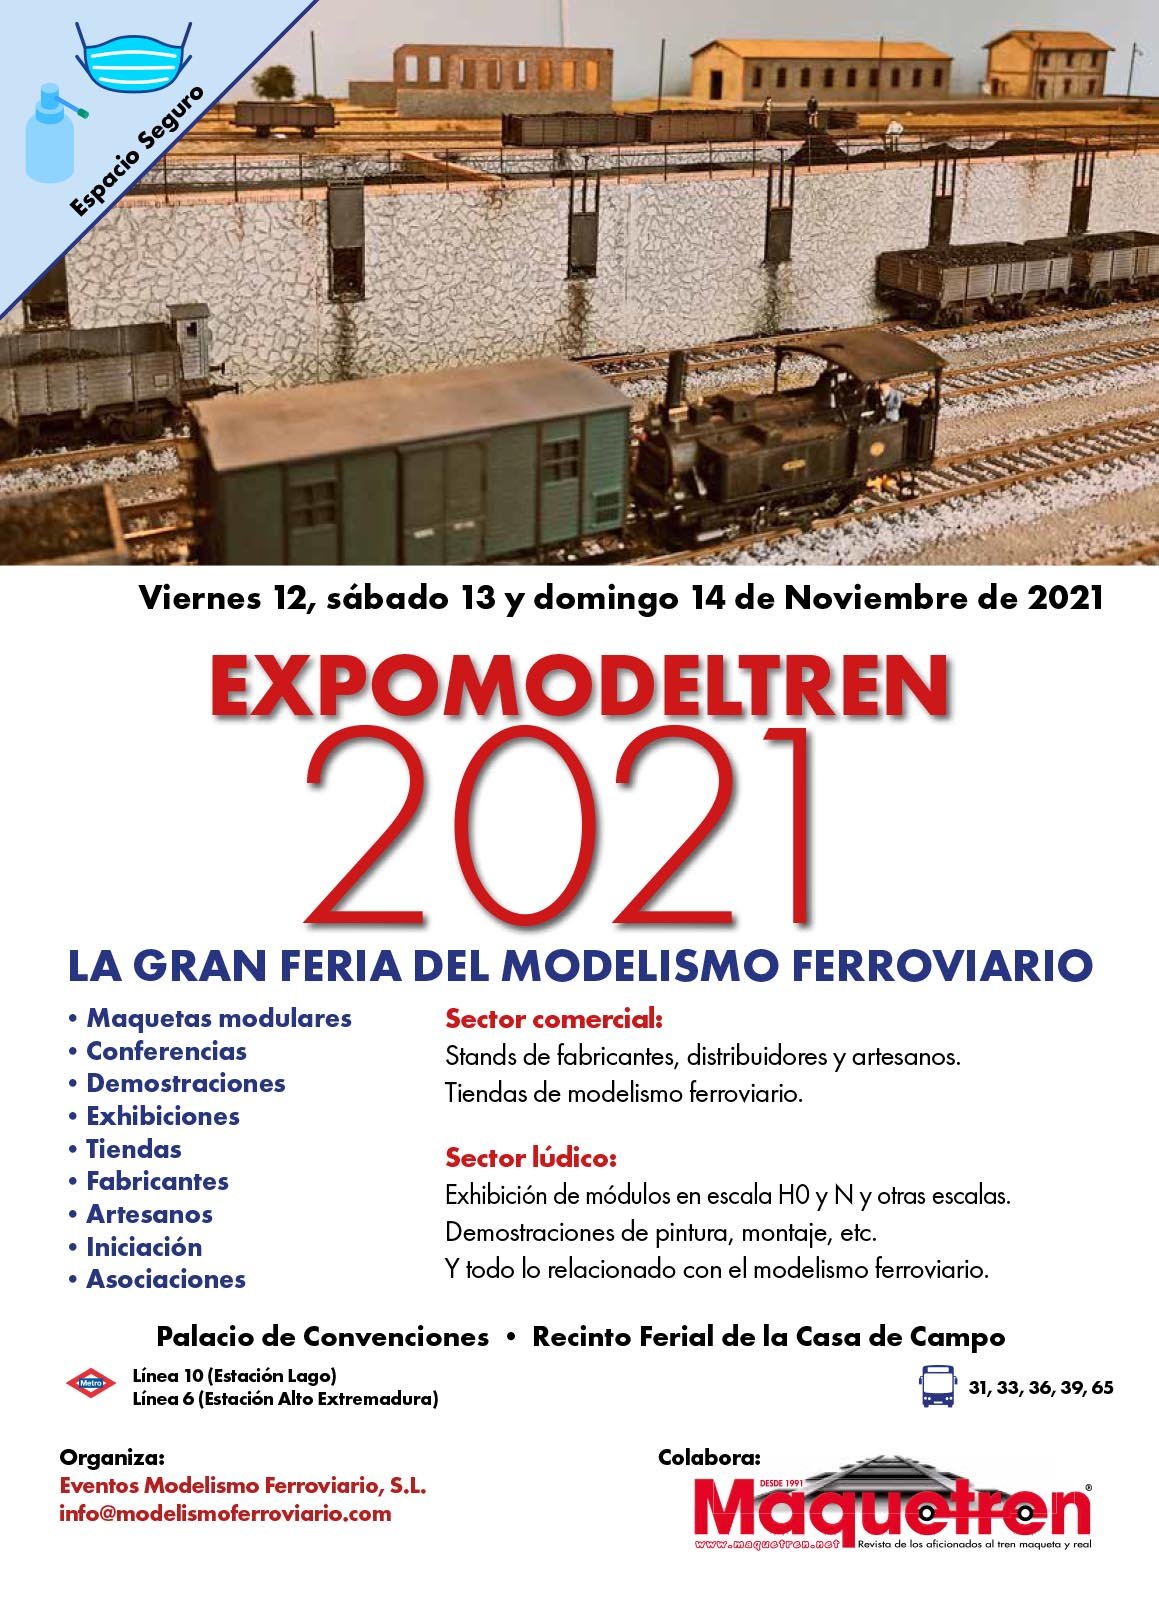 Expomodeltren Madrid 2021